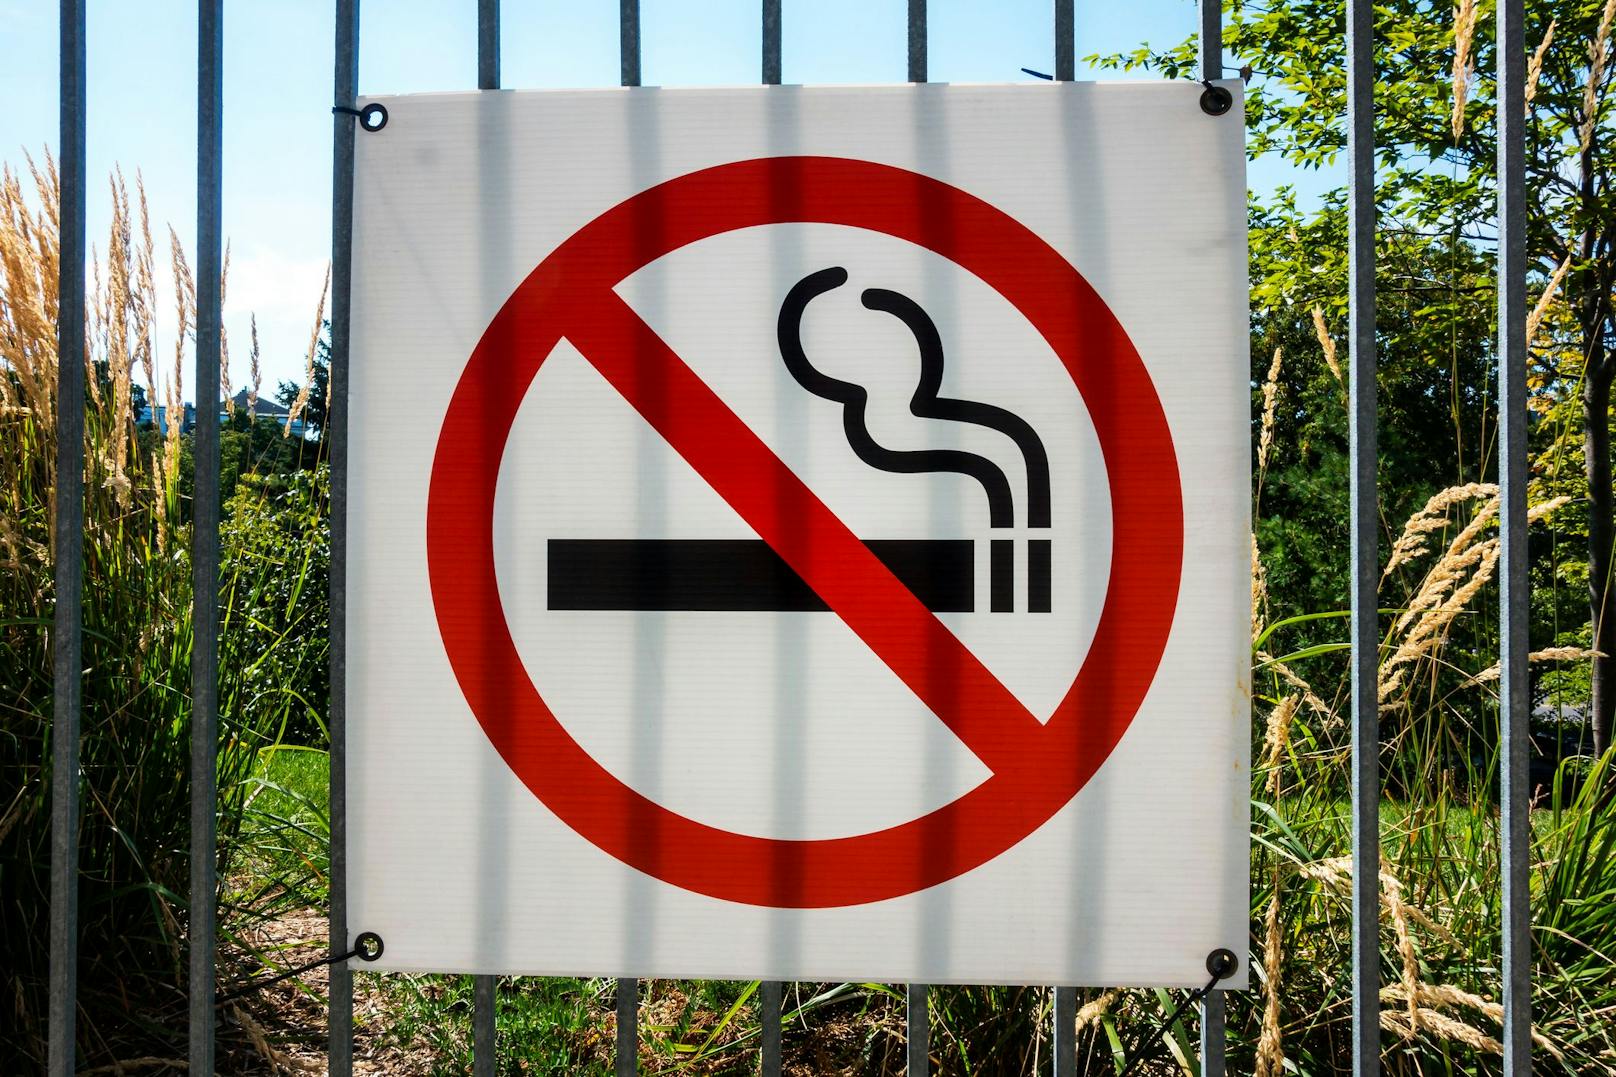 Wirt zu Rauchverbot in Schanigärten: "Das bringt nix"